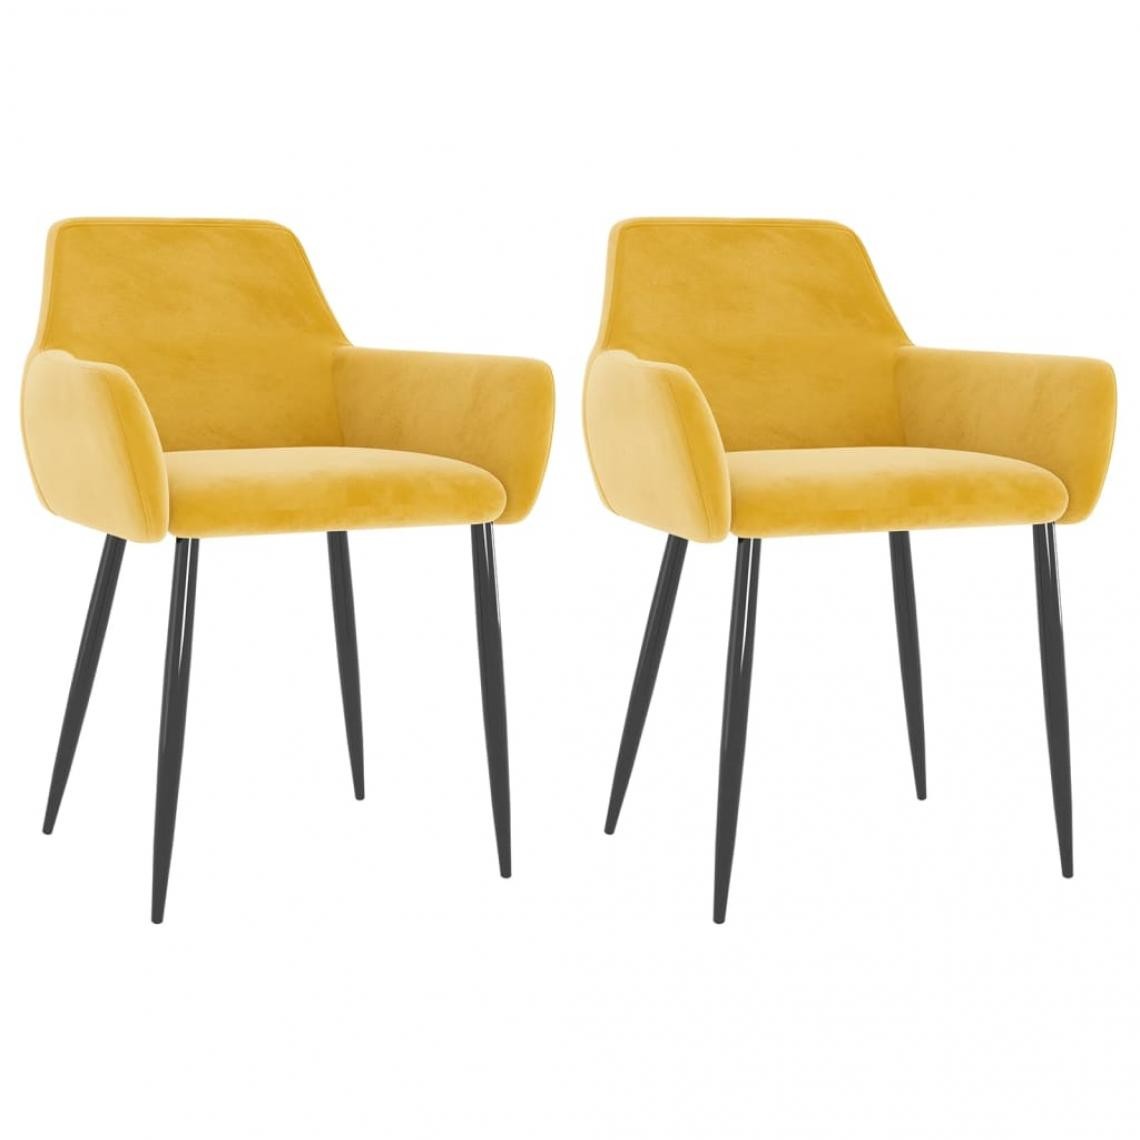 Decoshop26 - Lot de 2 chaises de salle à manger cuisine design moderne velours jaune moutarde CDS020630 - Chaises